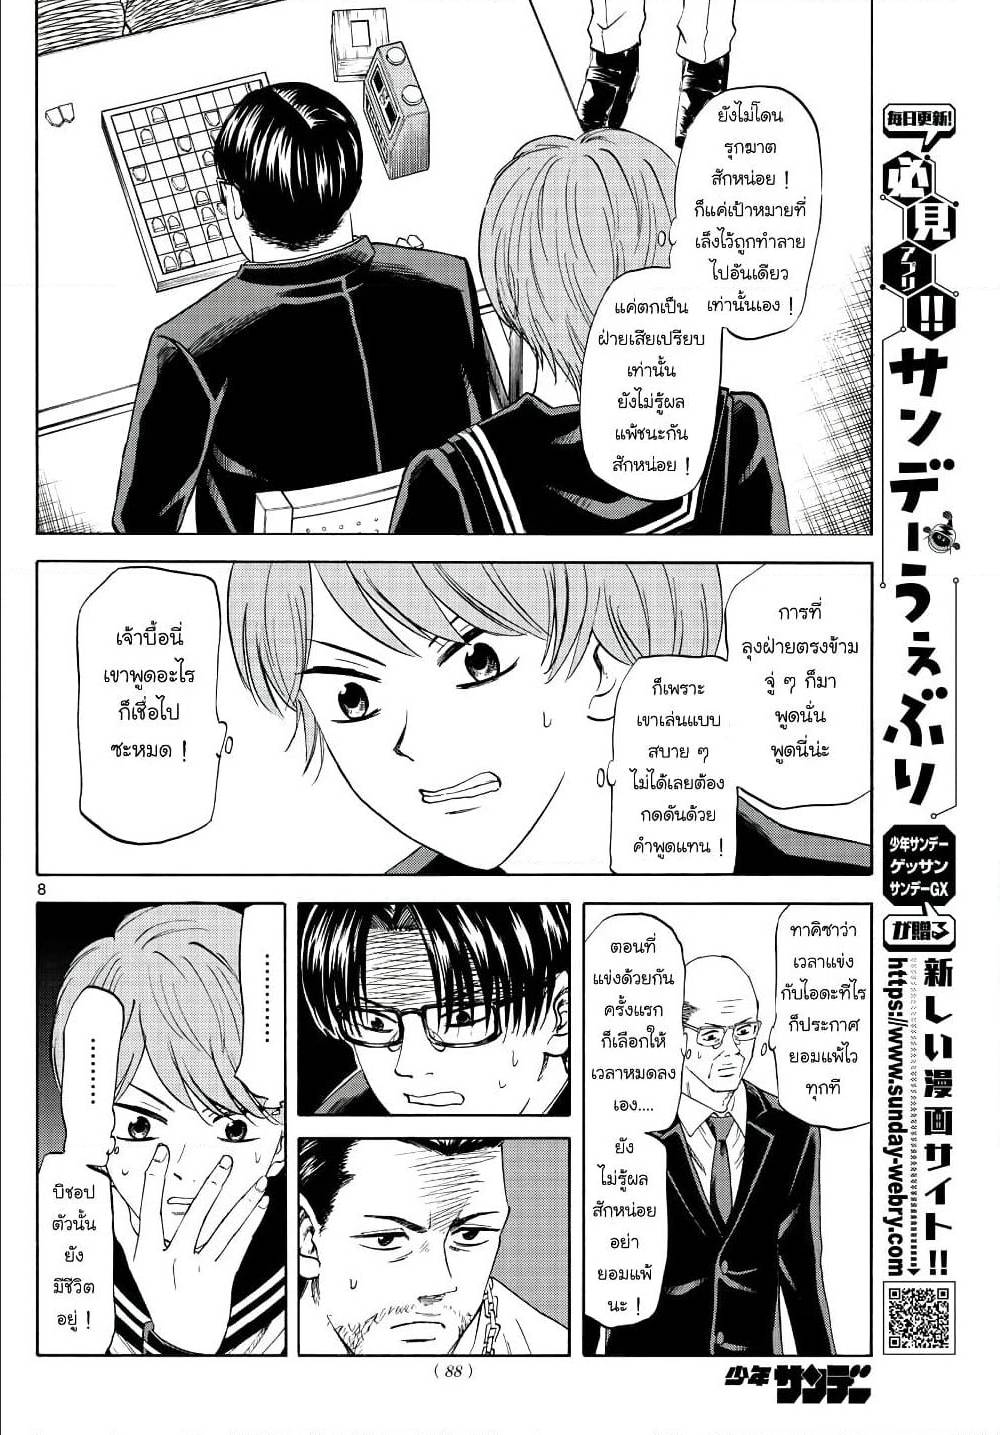 Ryuu to Ichigo 15 (8)